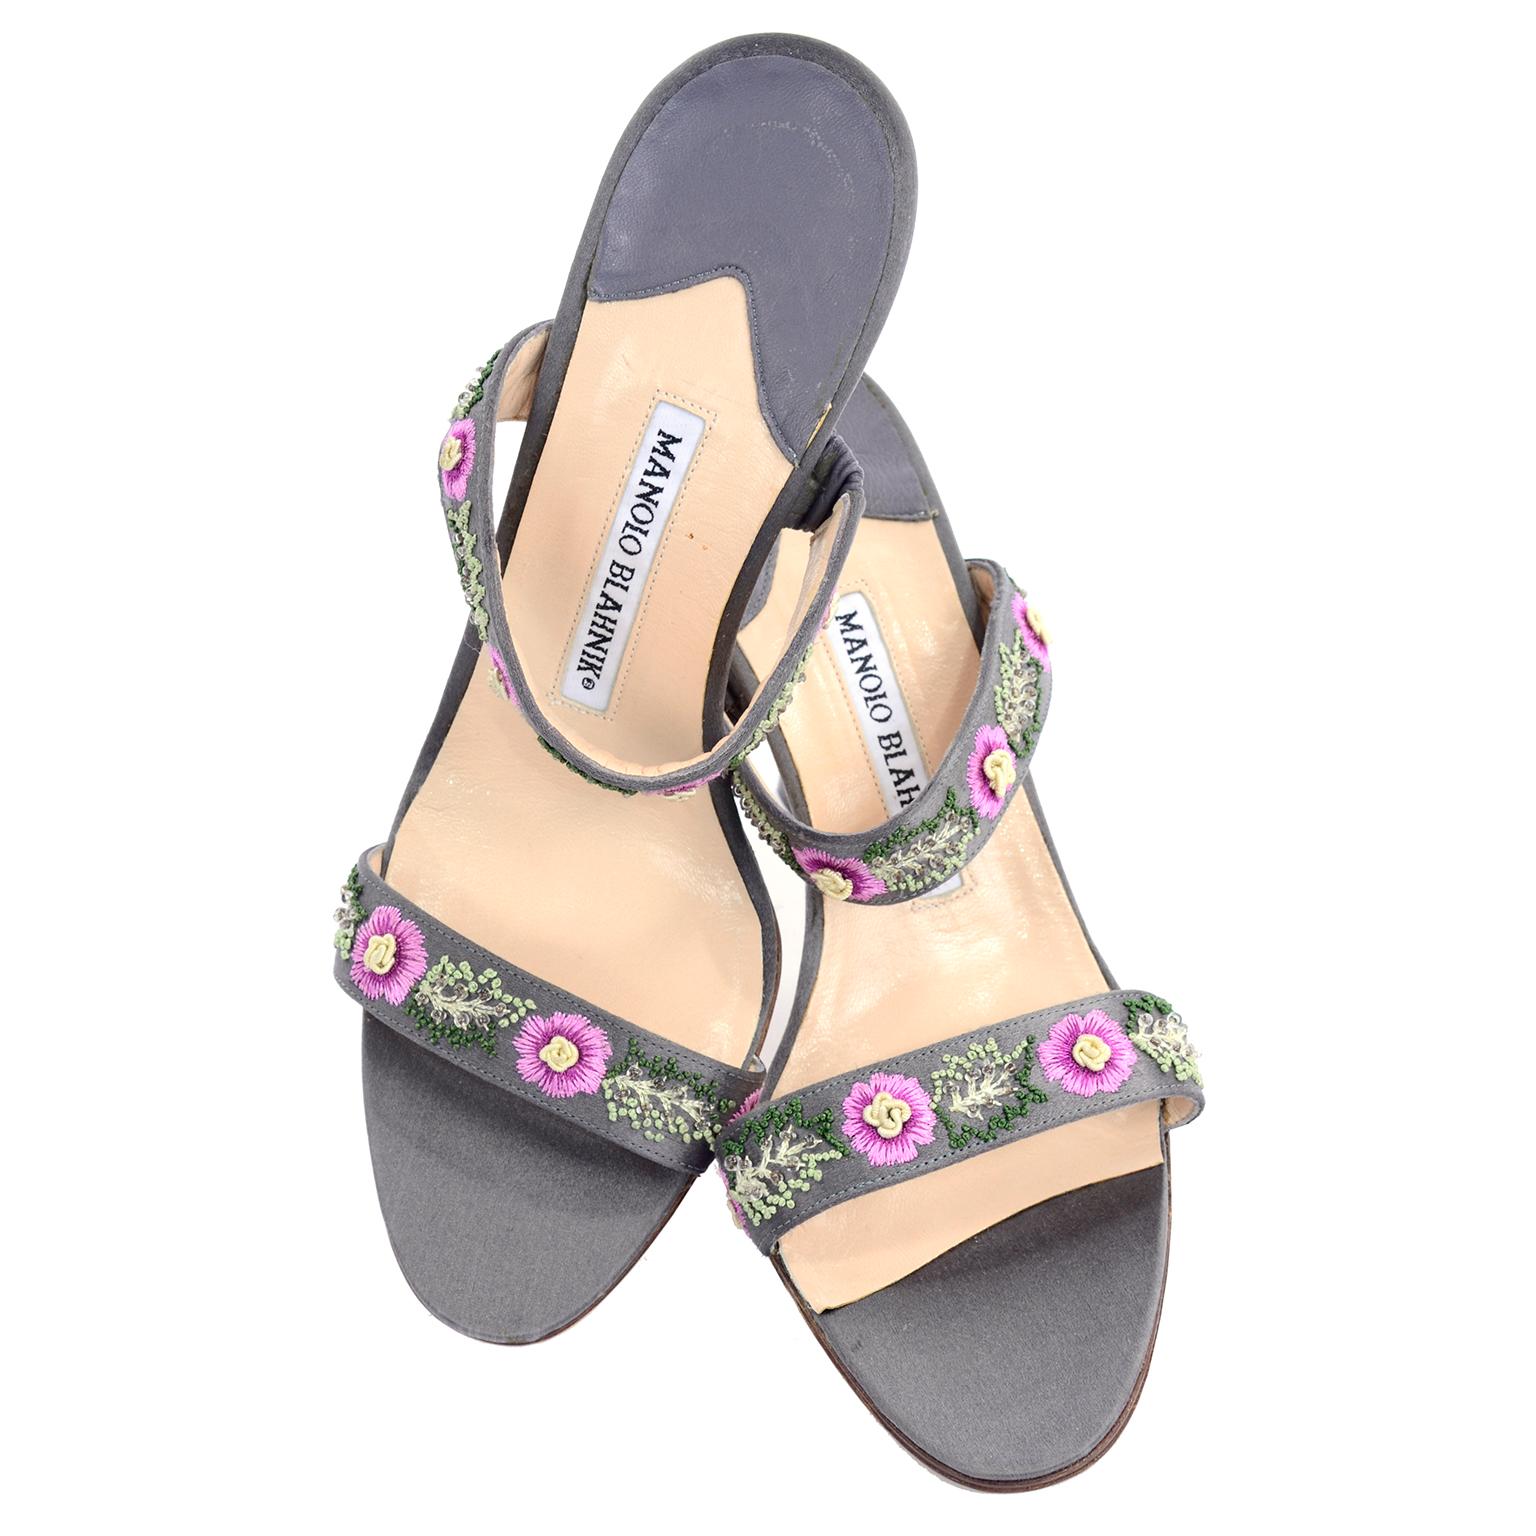 Ces jolies chaussures grises de Manolo Blahnik sont ornées de magnifiques fleurs roses brodées au centre de couleur crème et de feuilles vertes brodées et embellies de perles.  Ces sandales à talons ouverts ont de jolis talons et n'ont été portées